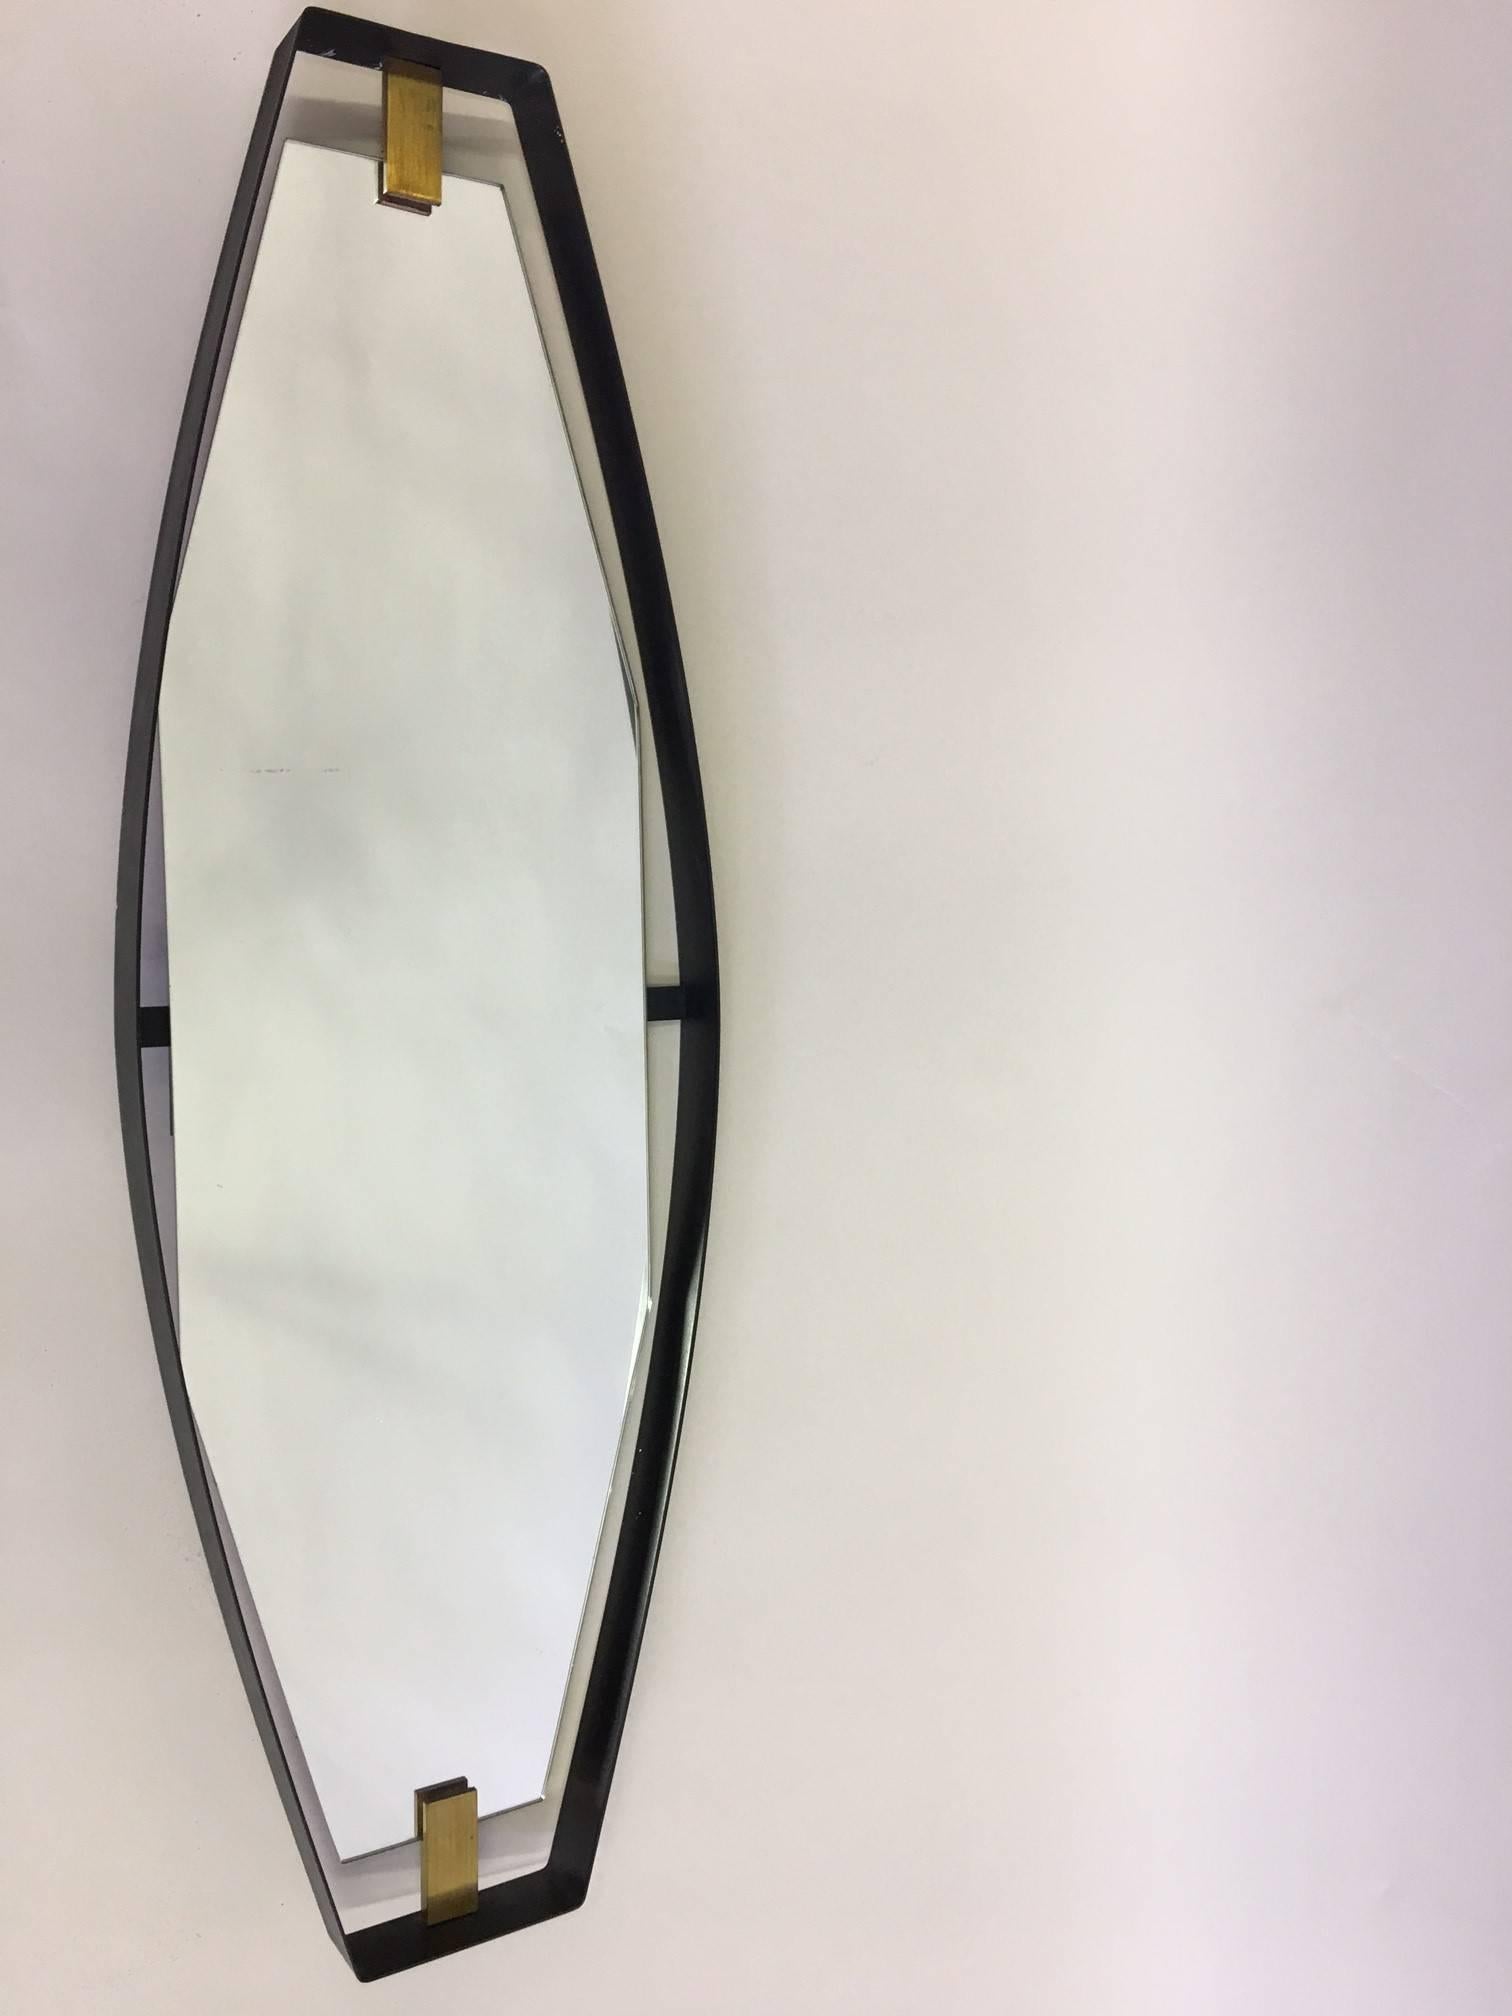 Wichtiger italienischer Spiegel der Jahrhundertmitte in einer seltenen skulpturalen, gekippten Form, der Max Ingrand für Fontana Arte, 1950, zugeschrieben wird. 

Der Spiegelrahmen besteht aus einem schwarz emaillierten Metallband, das in einer